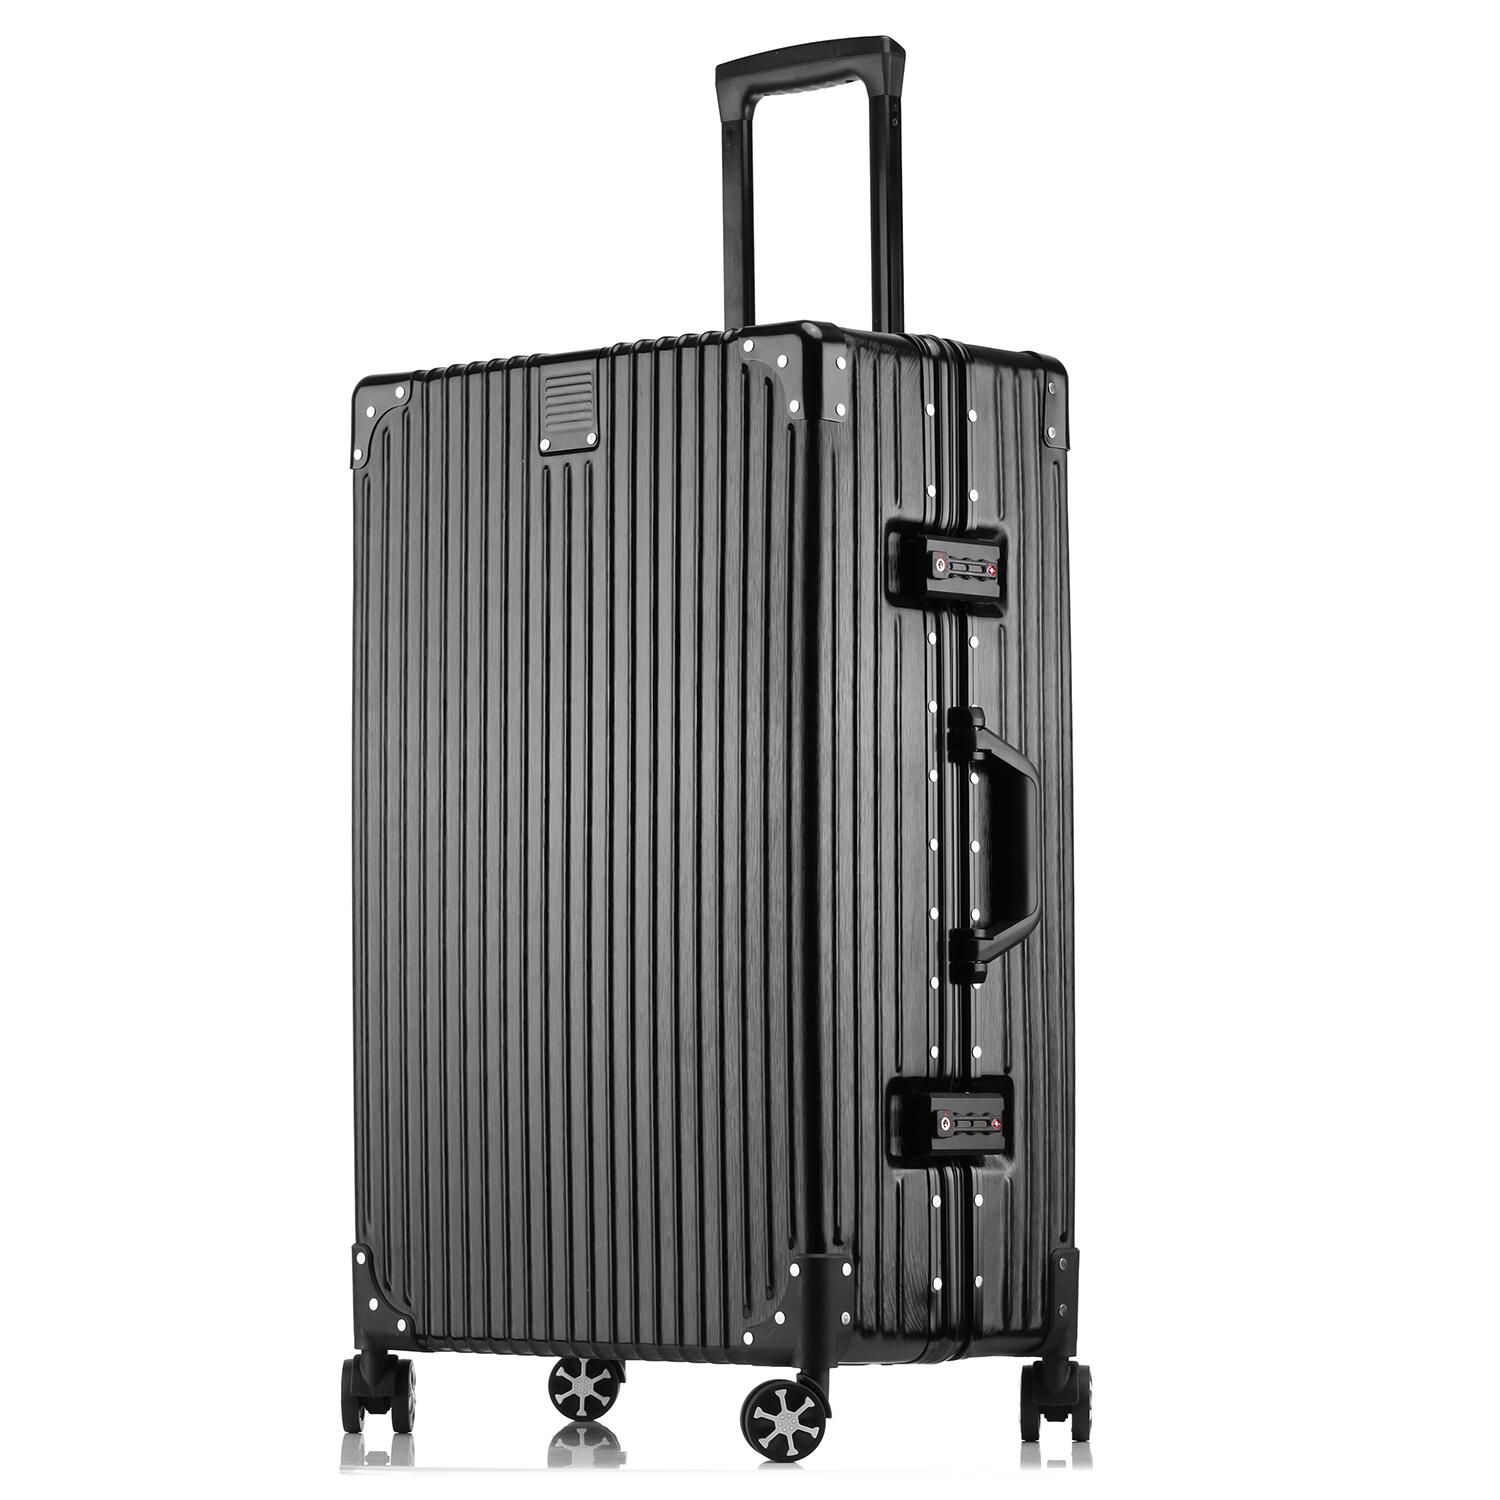 スーツケース XLサイズ キャリーバッグ キャリーケース トランクケース トロリーケース アルミフレーム 軽量 ダブル 大型 大容量 空港 旅行カバン 世界基準 TSAロック ダイヤルロック 送料無料